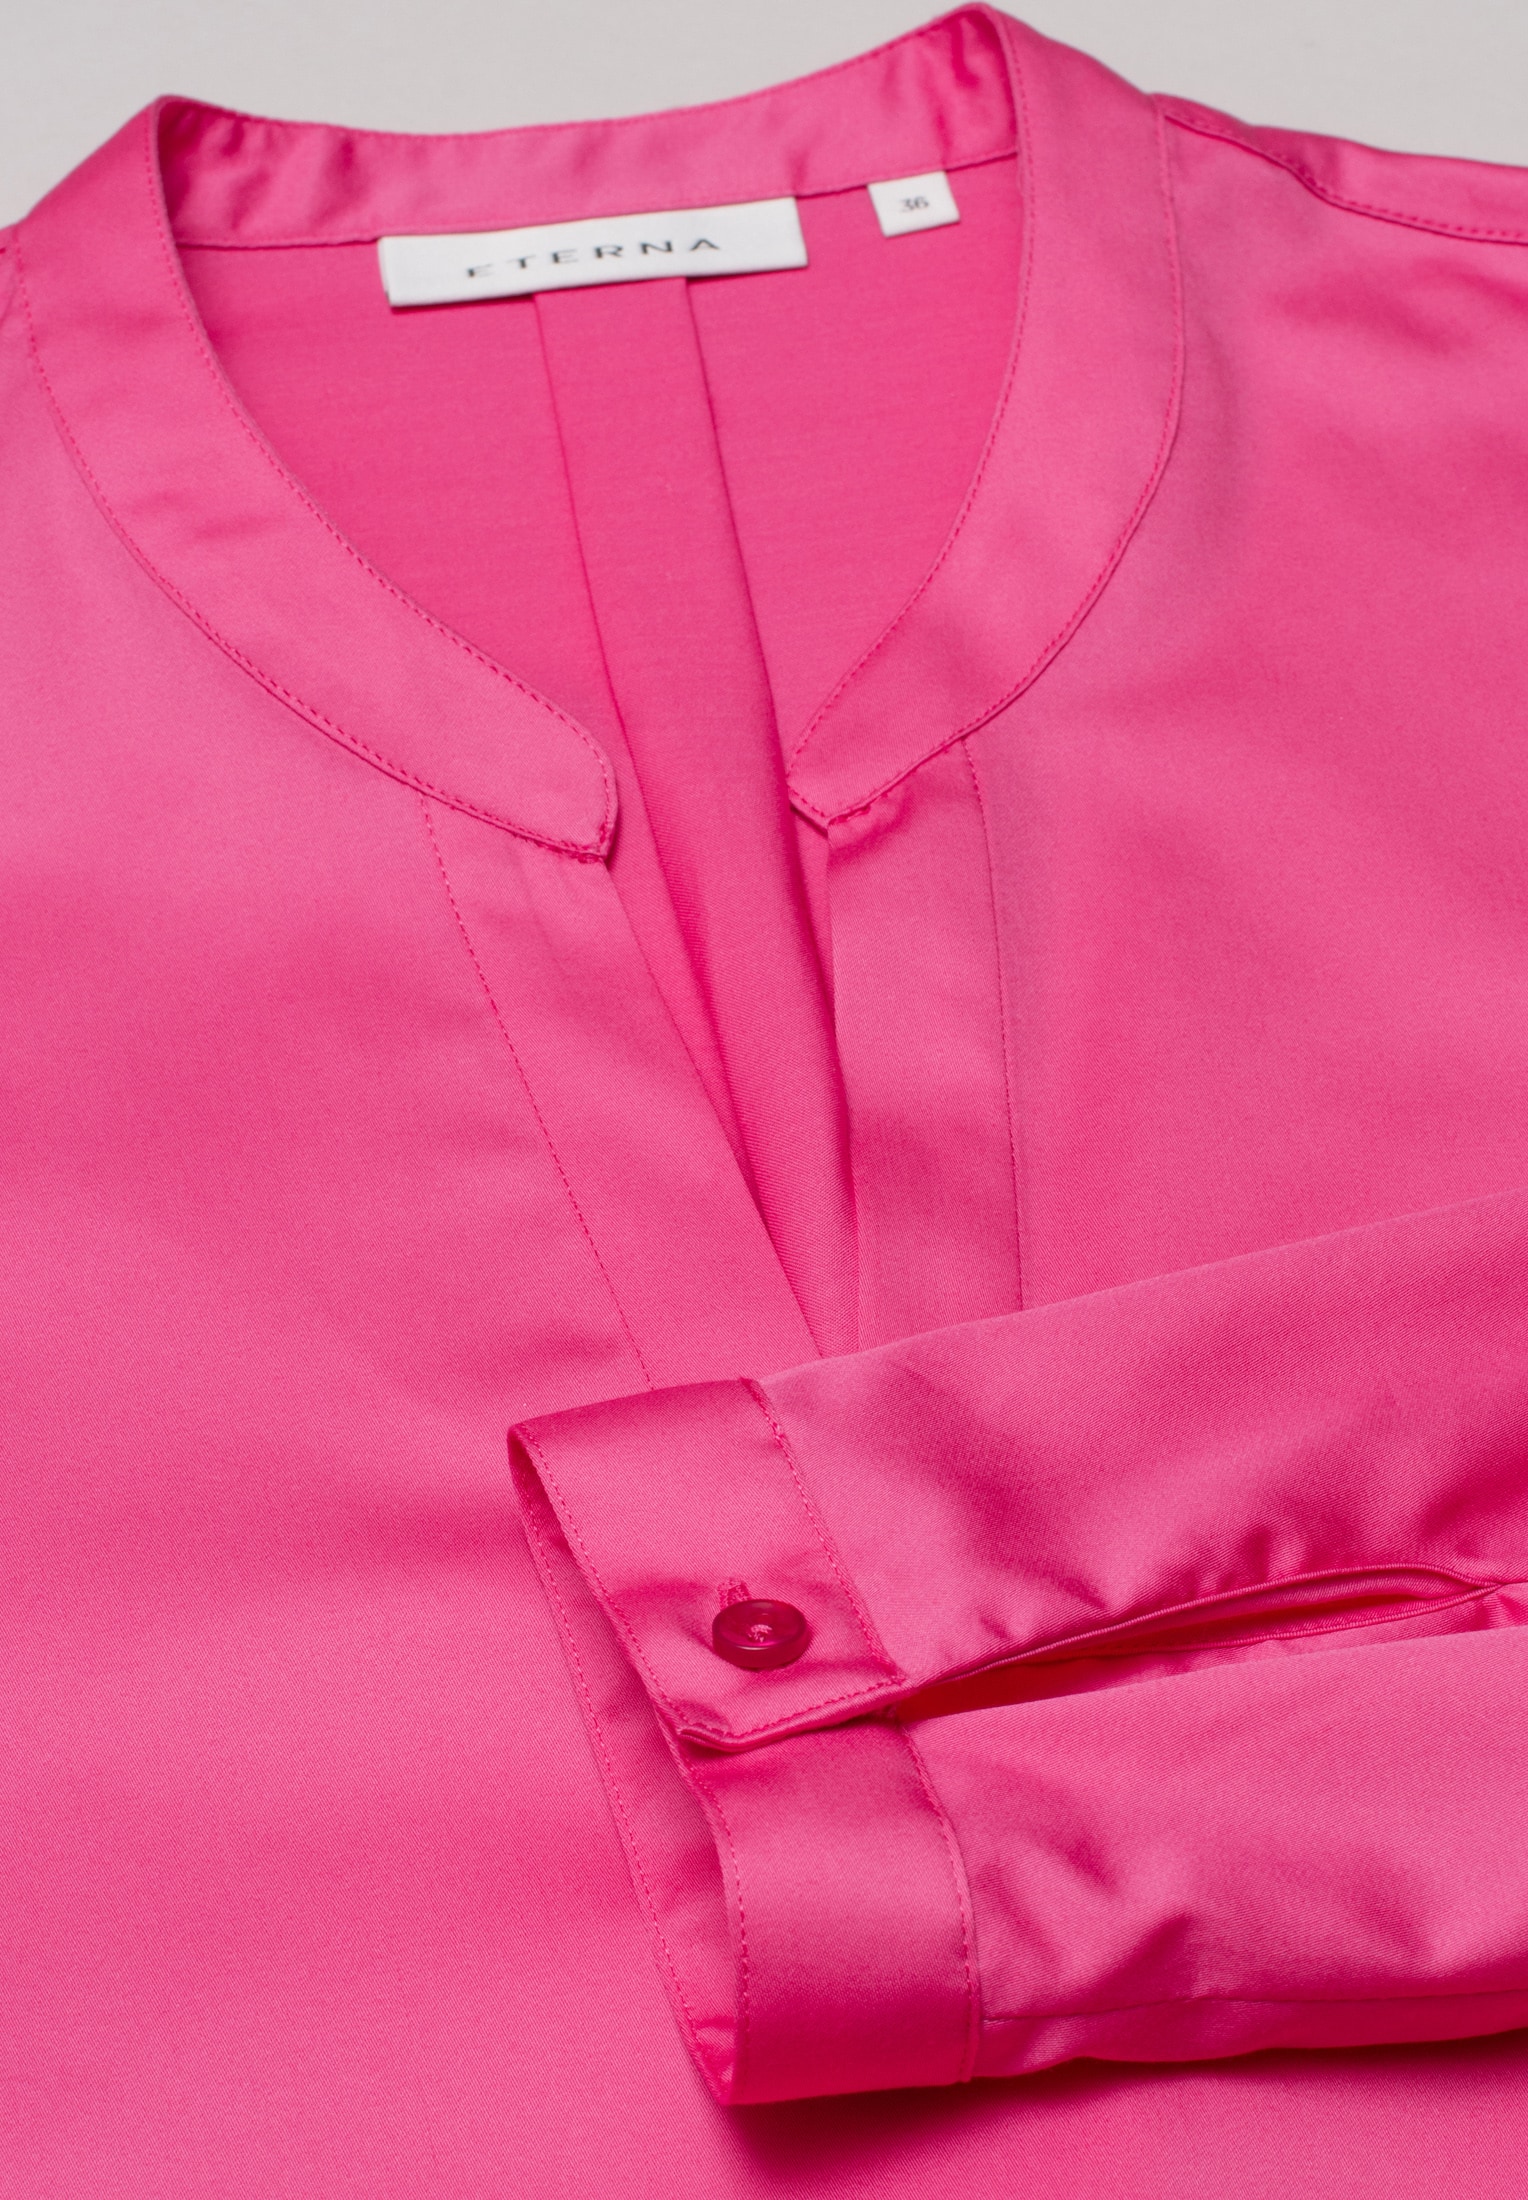 Satin Shirt Bluse in pink unifarben | pink | 50 | Langarm |  2BL00618-15-21-50-1/1